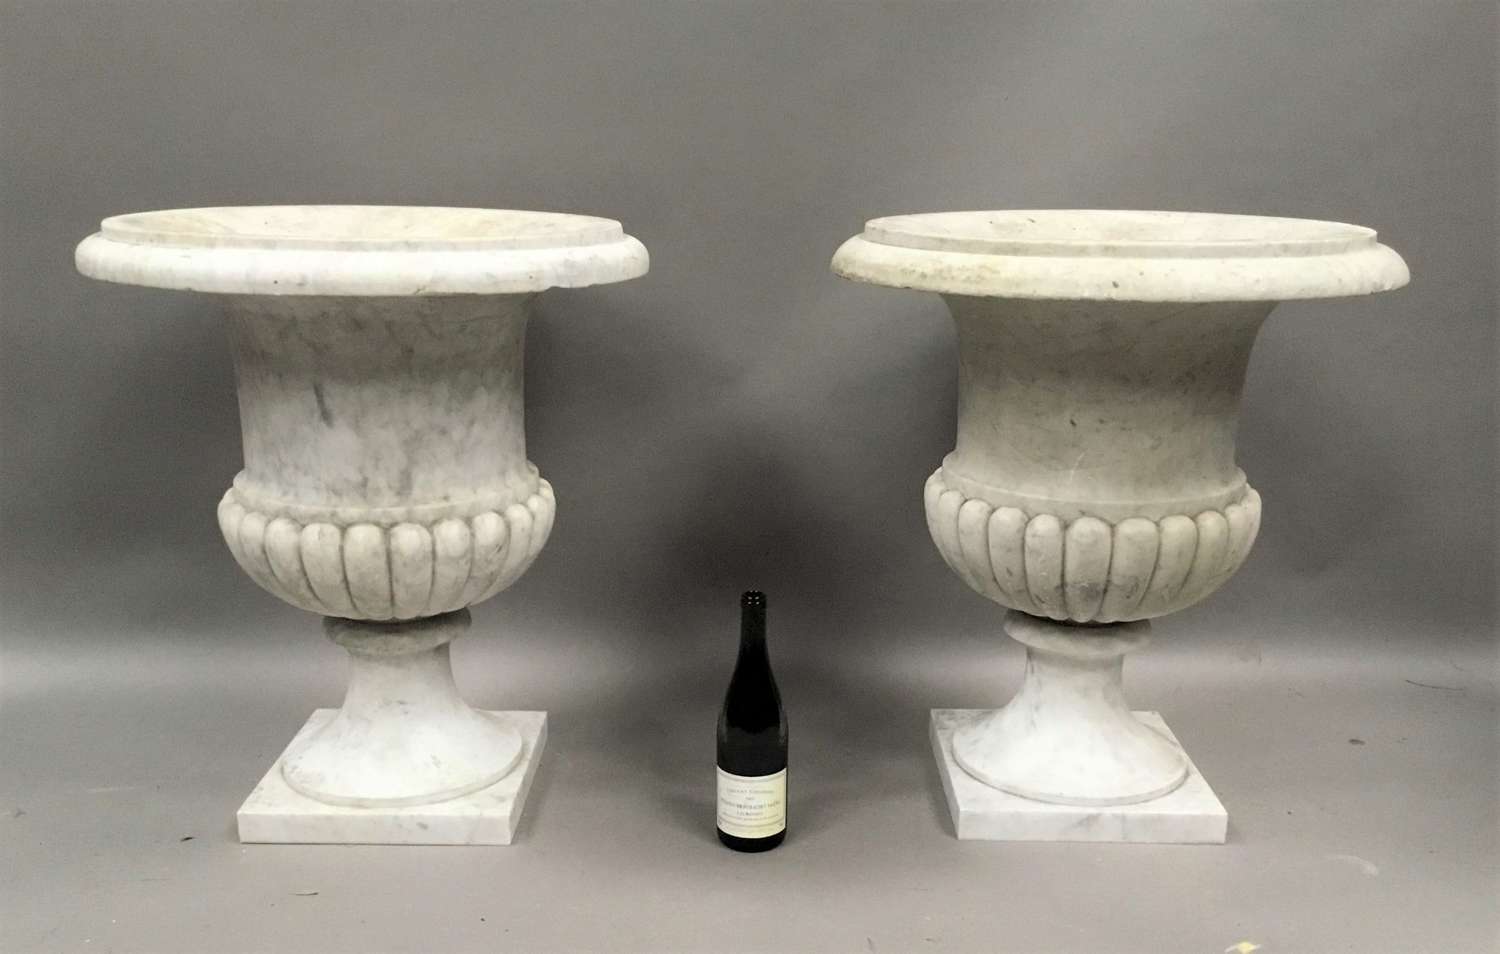 An impressive C19th pair of carrara marble urns